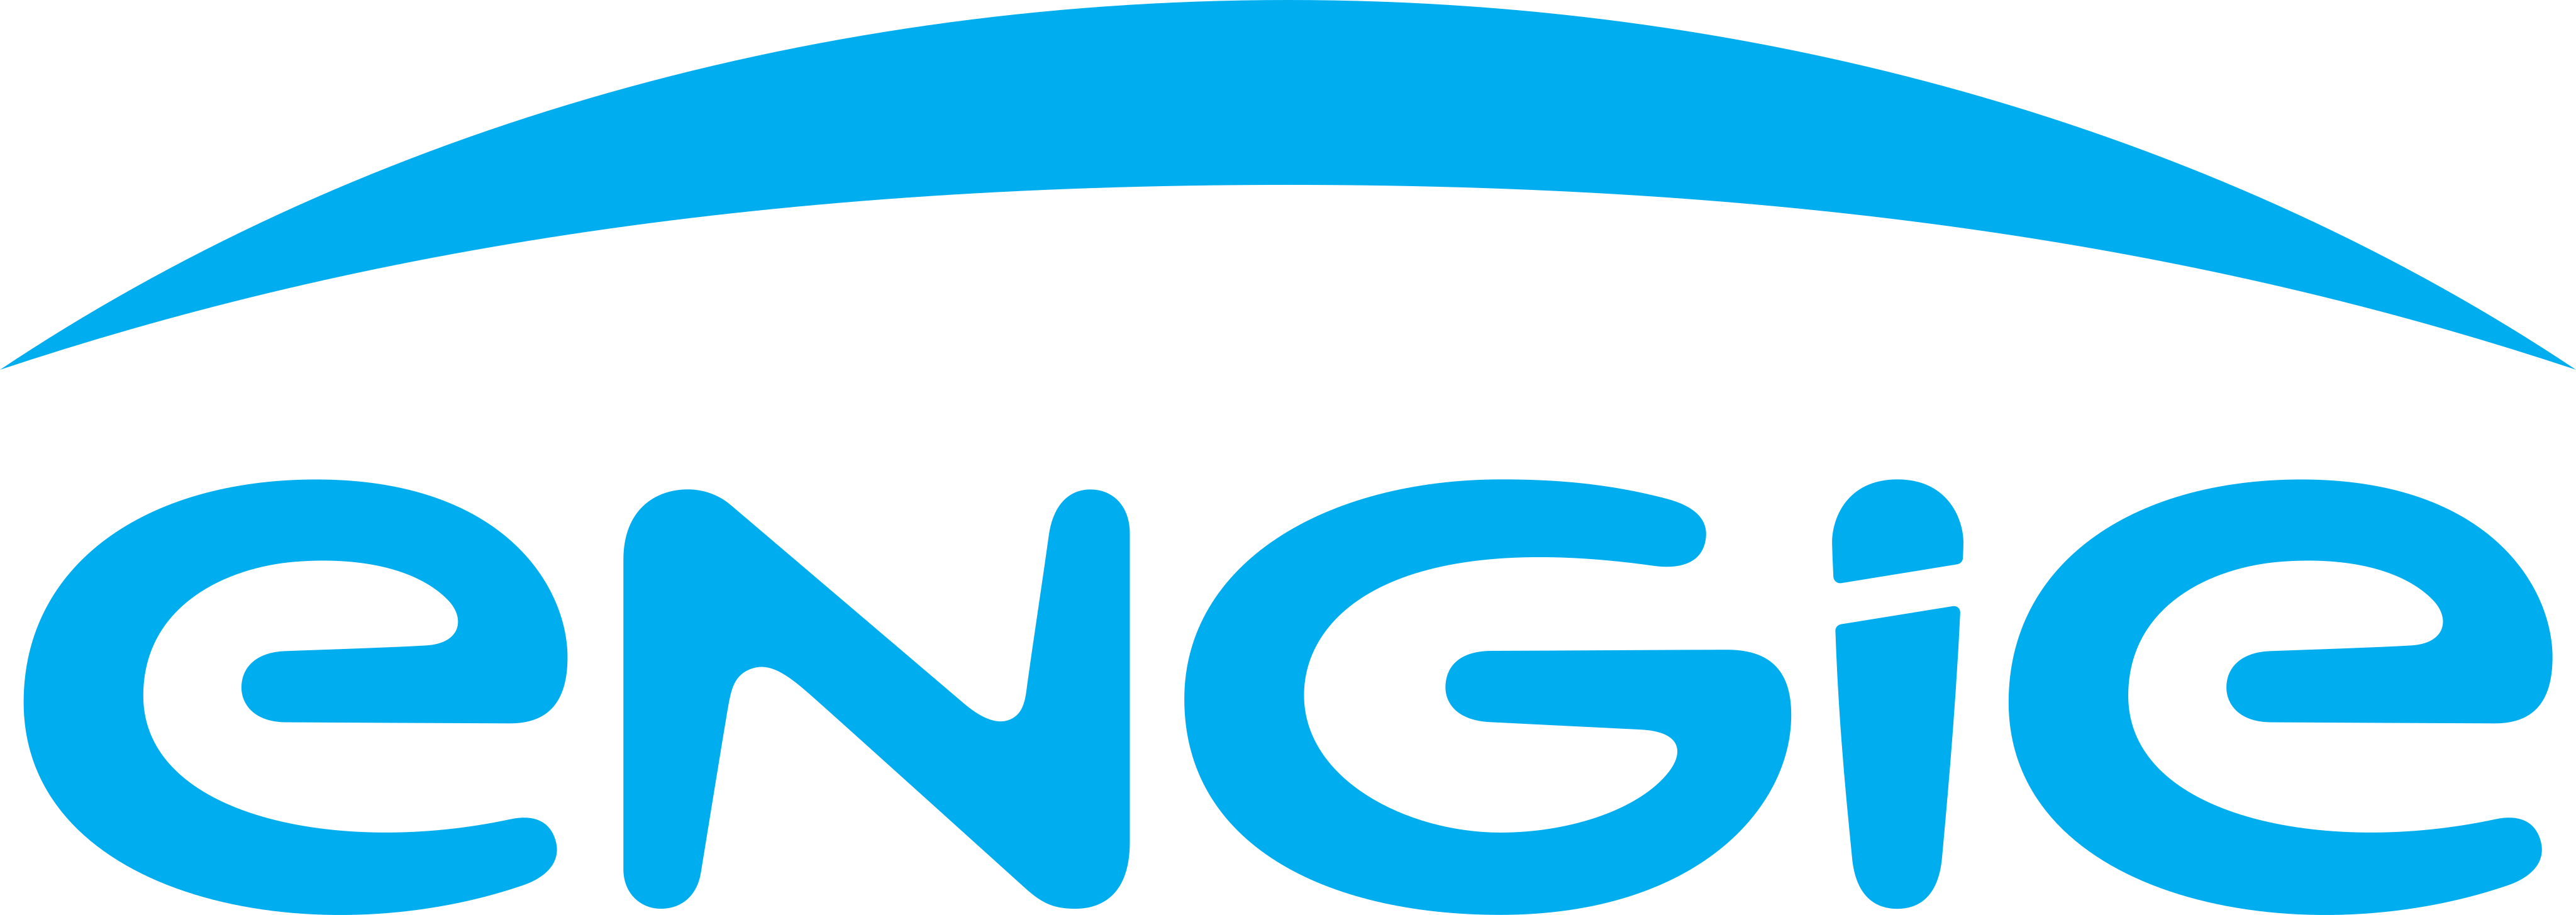 engie logo - Engie Logo